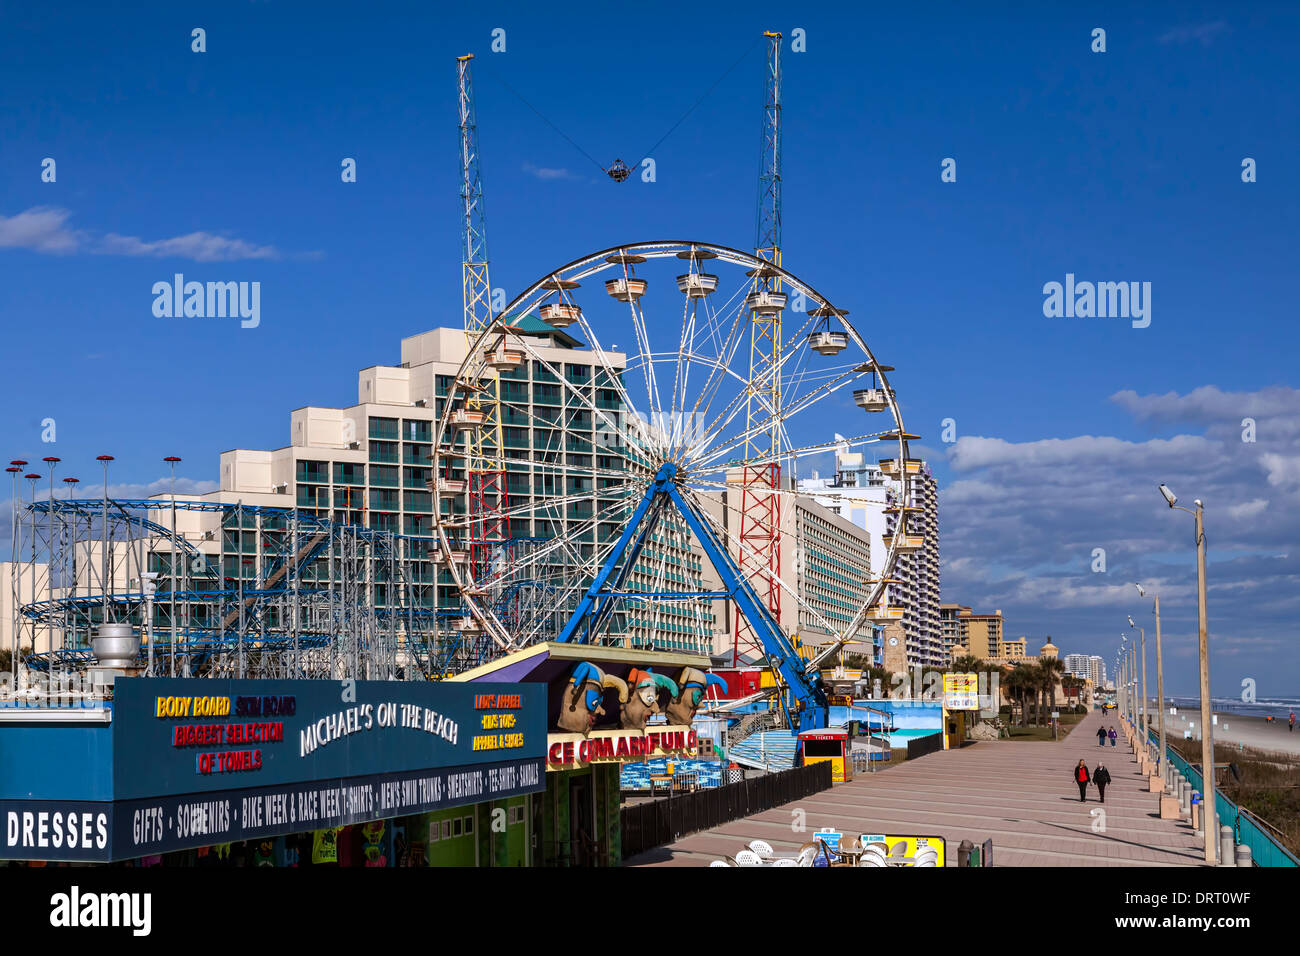 Grande roue et montagnes russes dans le Daytona Beach Boardwalk amusement park sur la plage. Banque D'Images